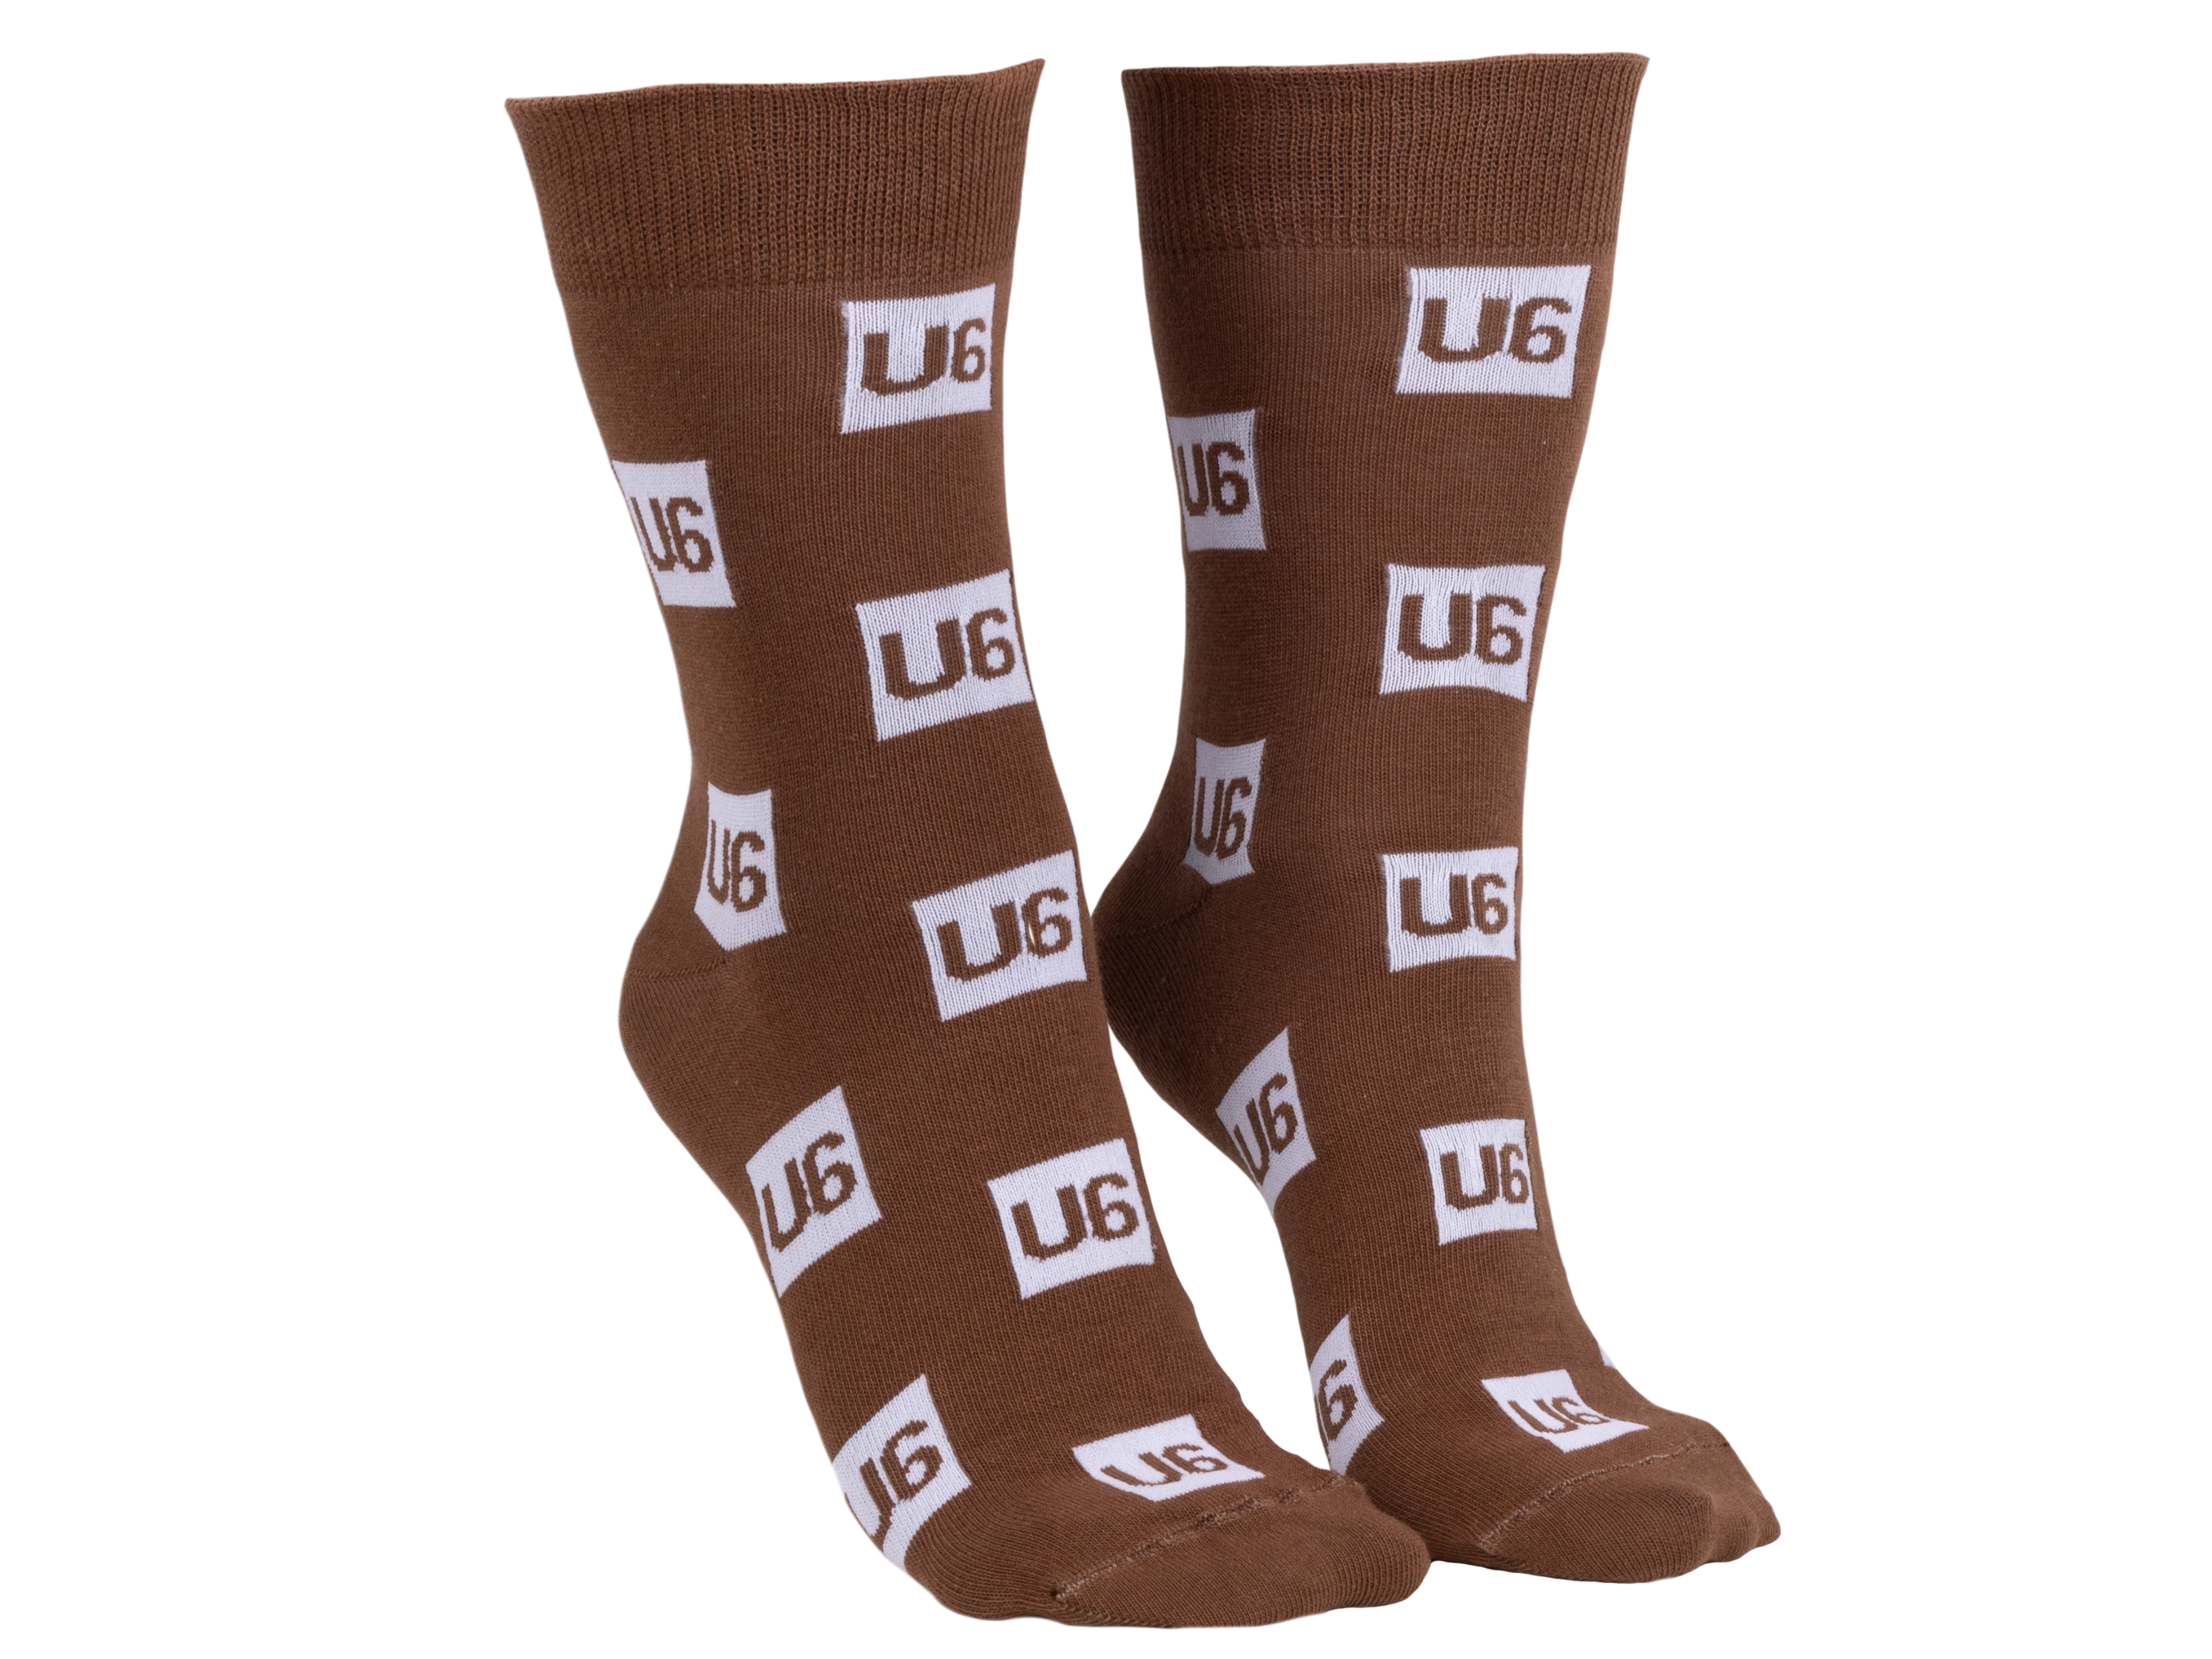 U6 Socken